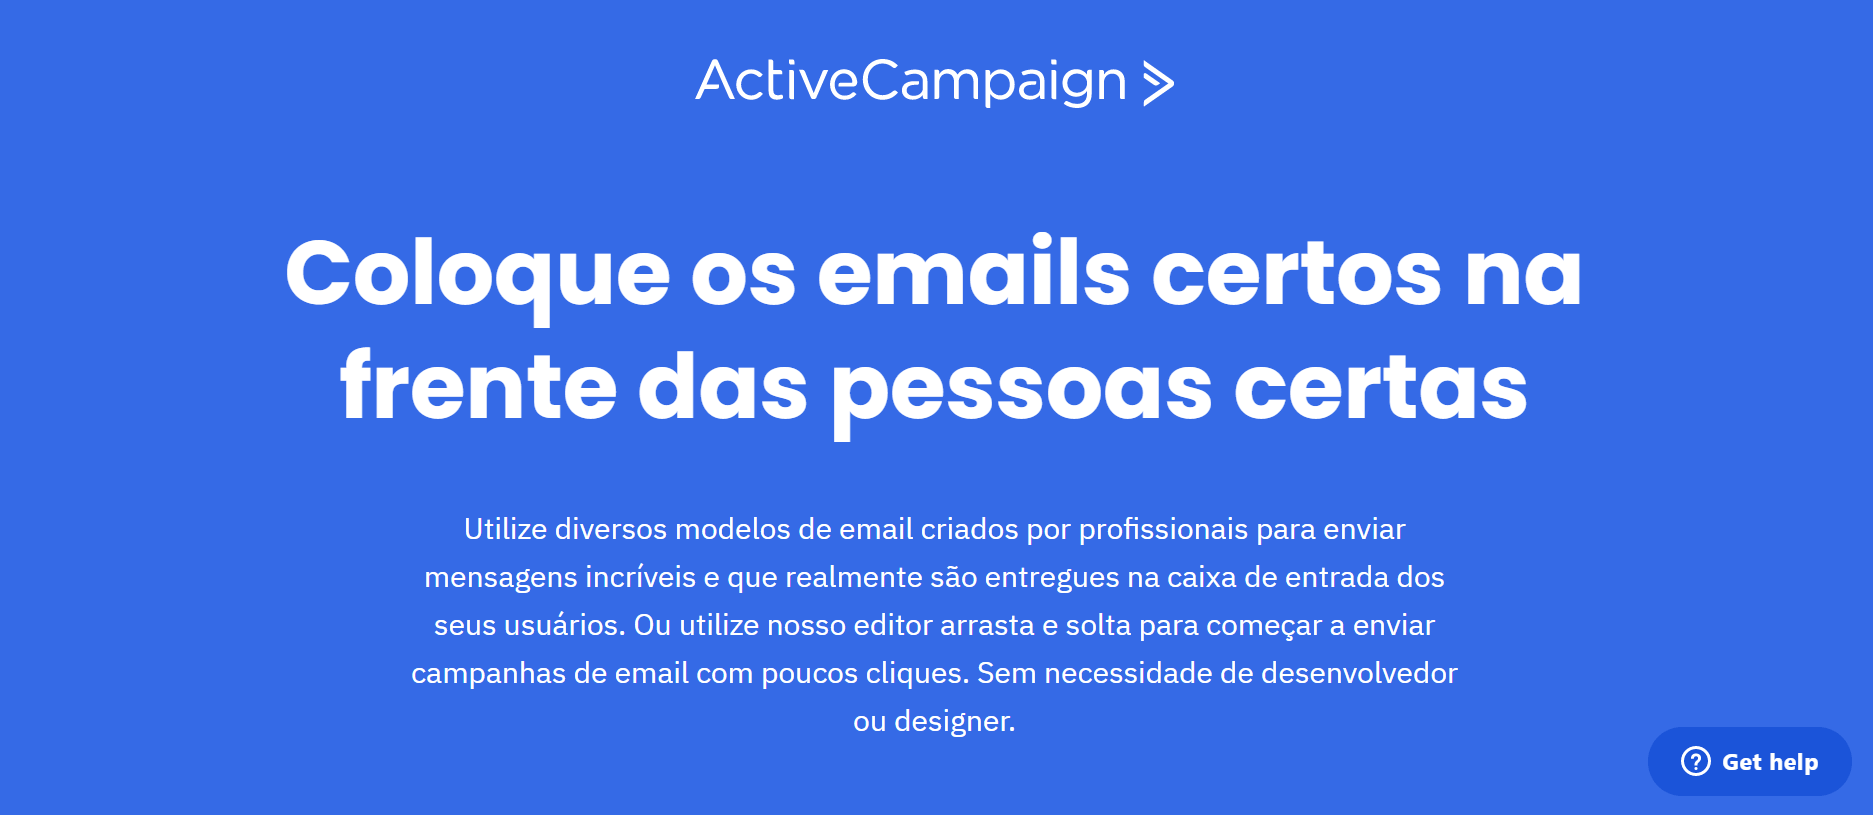 Página inicial Active Campaign